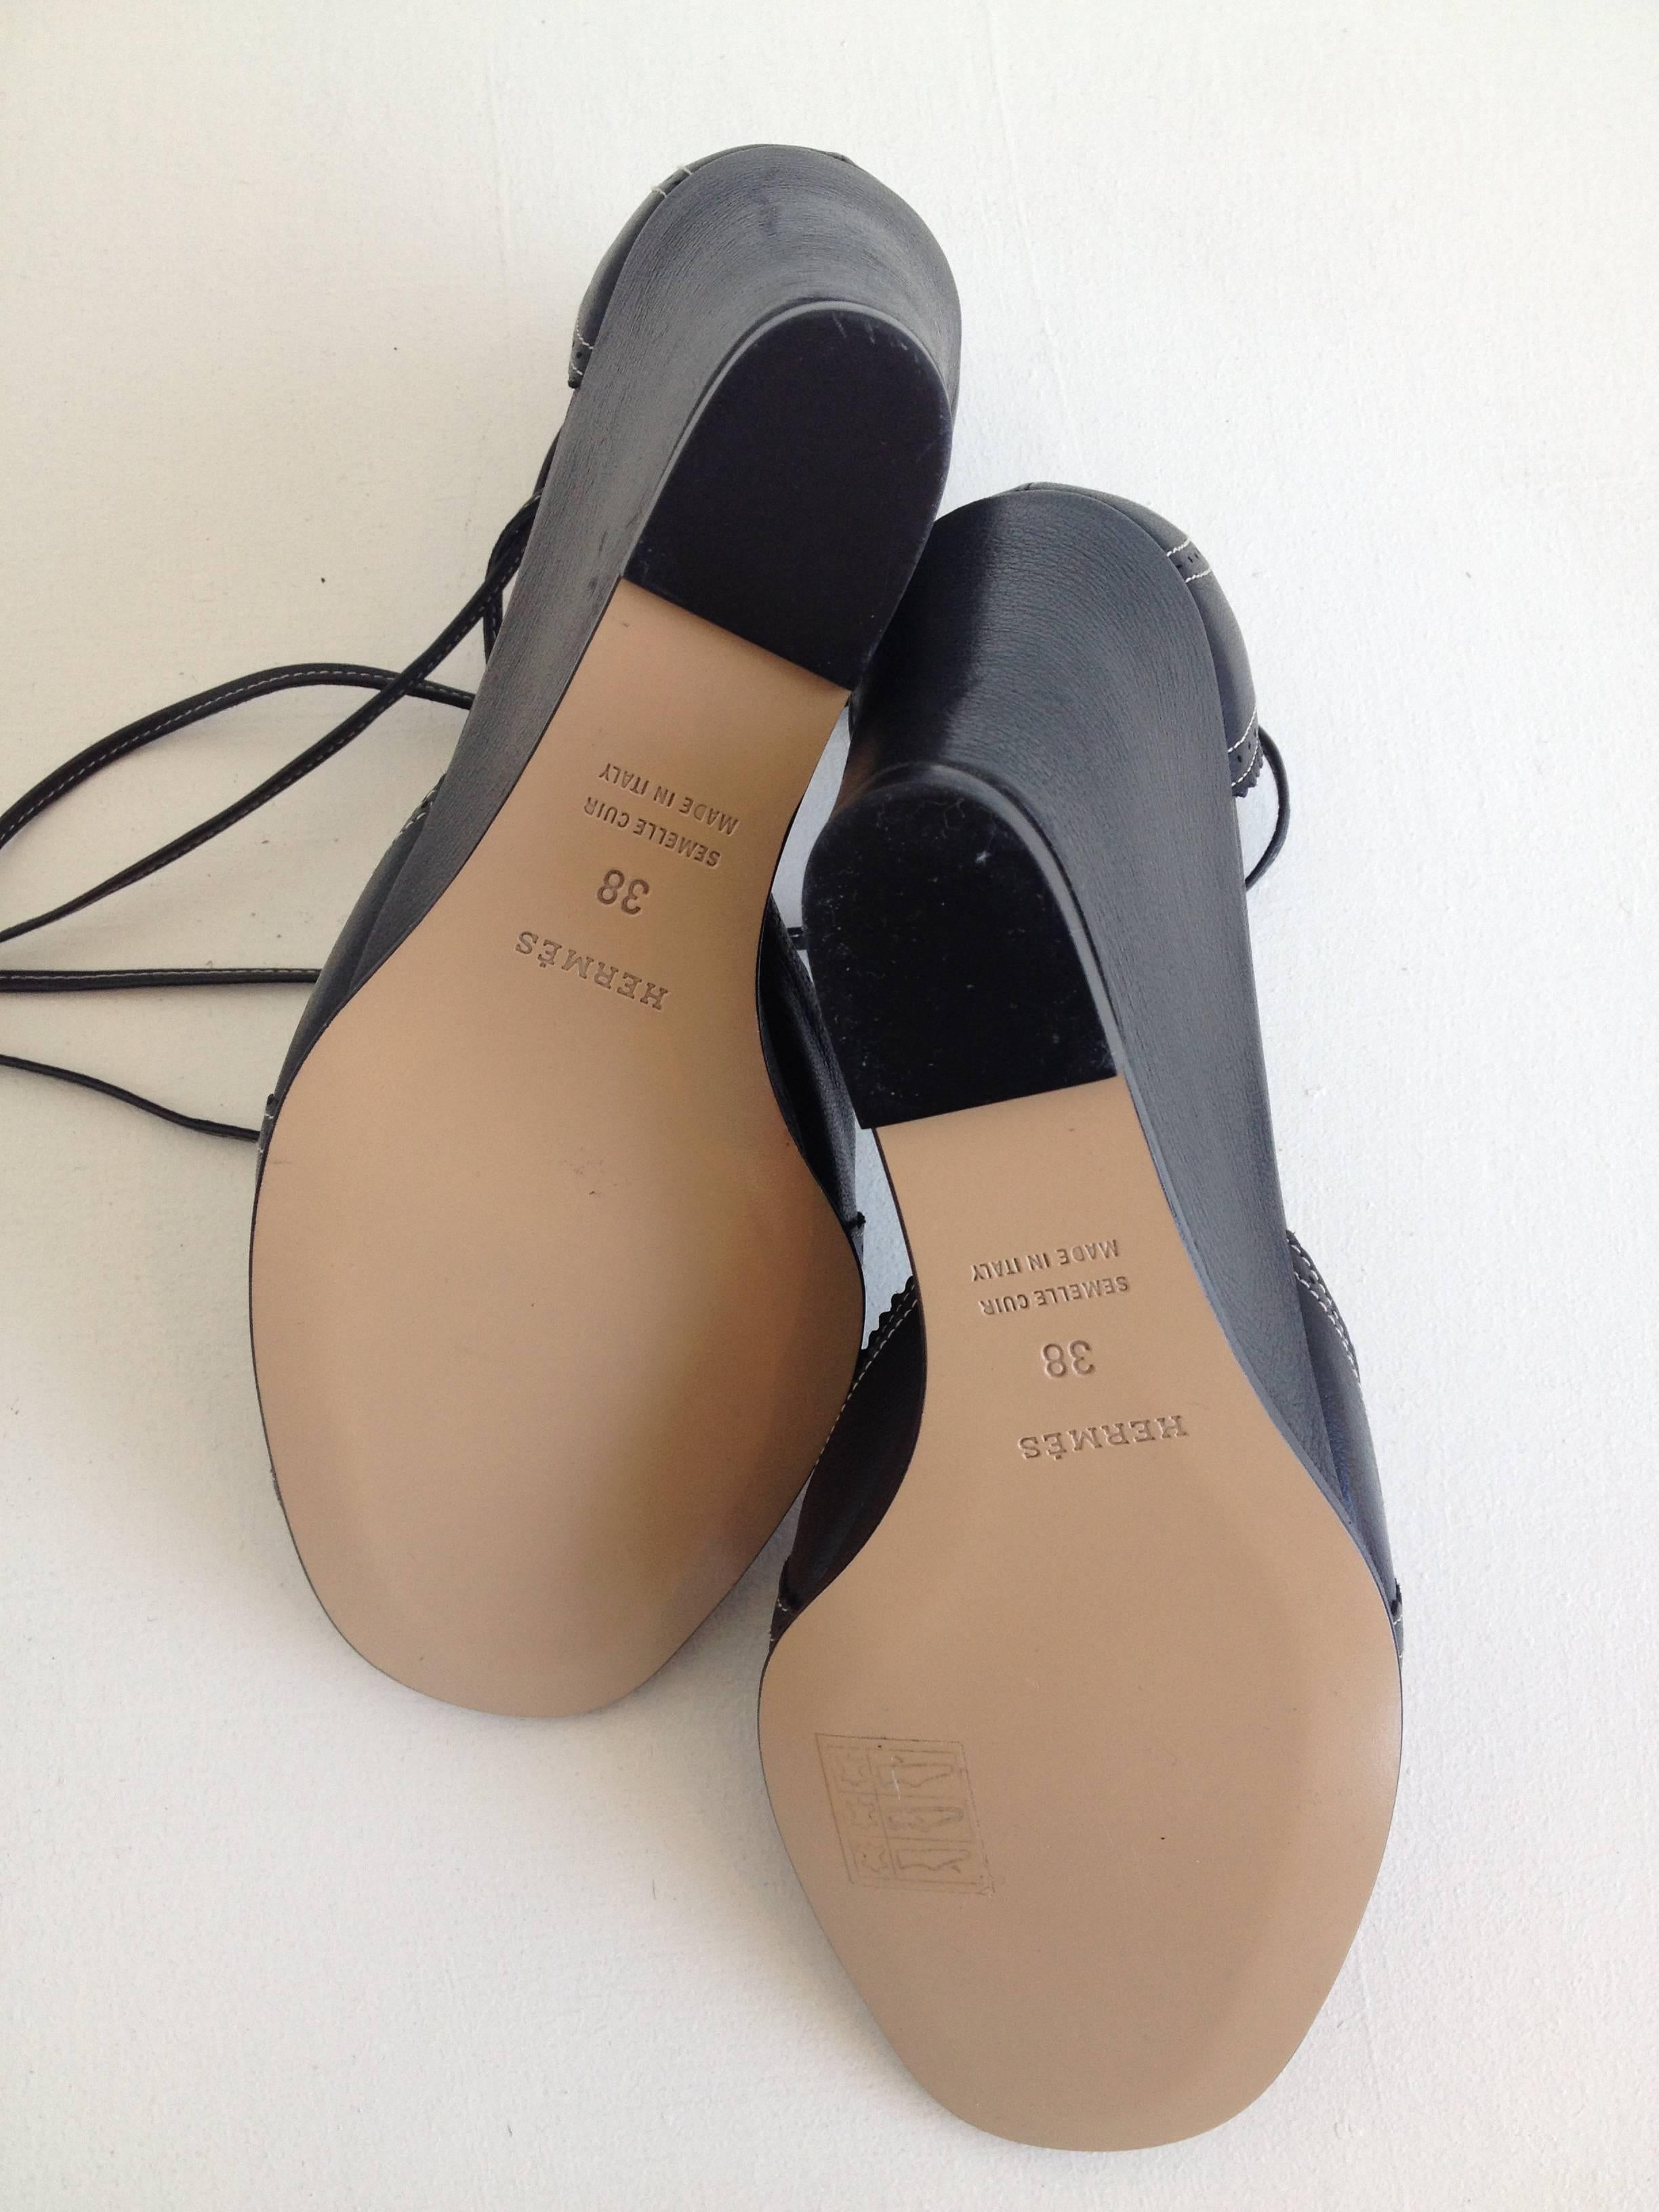 Hermes Black Leather Sandal Wedges Size 38 (7.5) 2